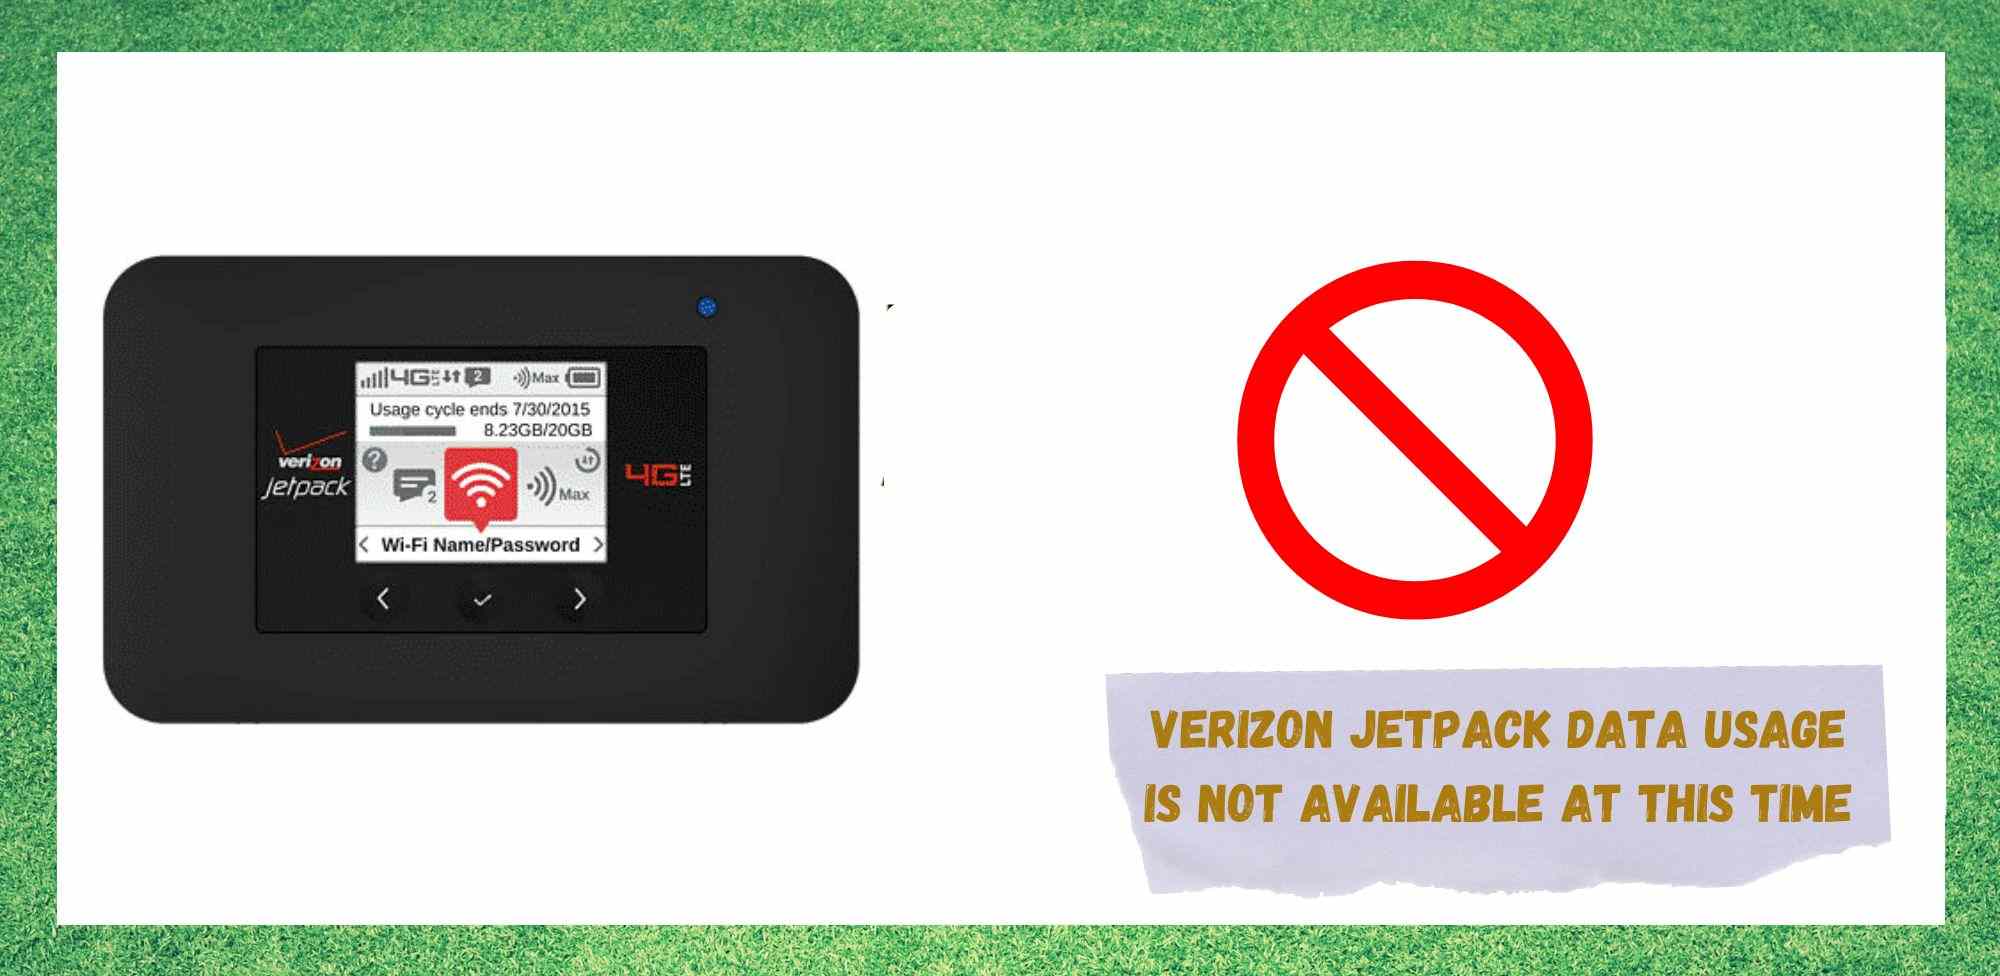 7 způsobů opravy služby Verizon Jetpack Využití dat není v tuto chvíli k dispozici